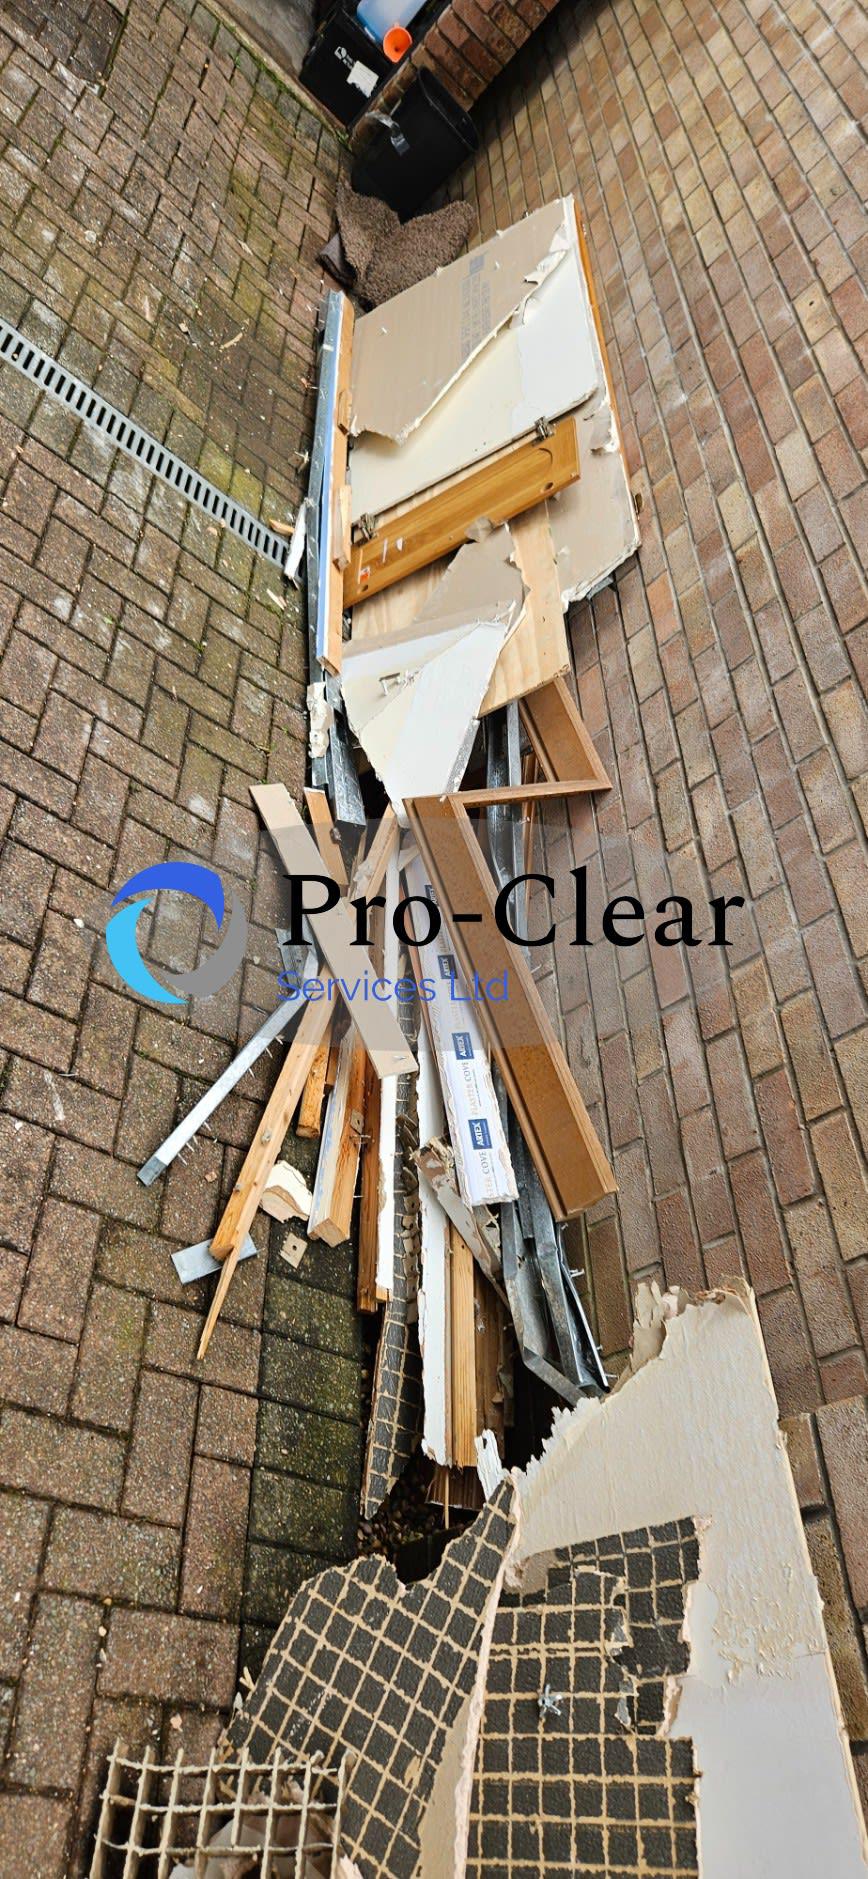 Images Pro Clear Services Ltd